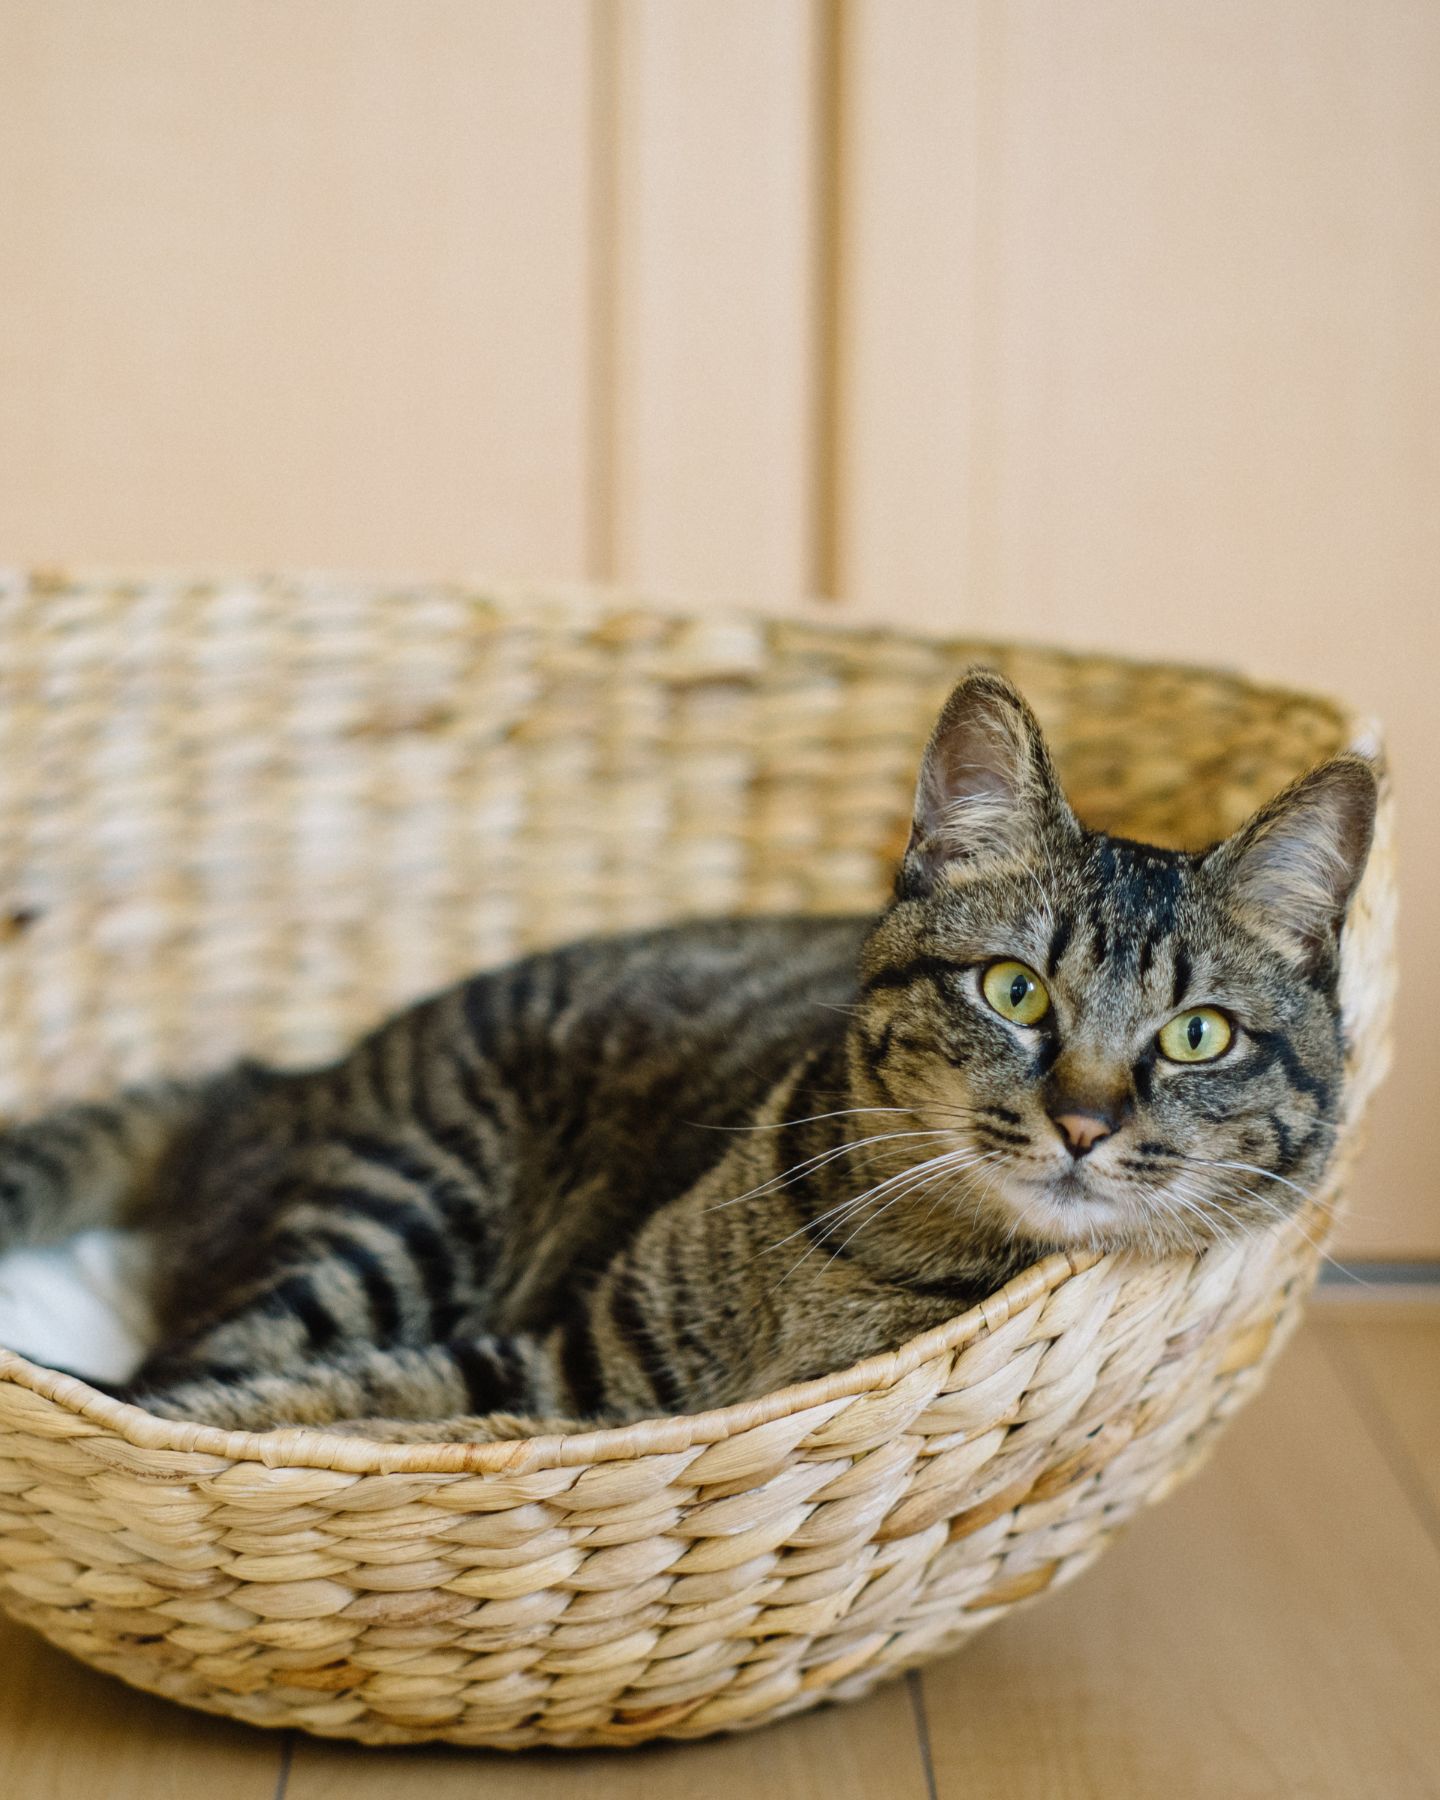 cat lying in wooden basket